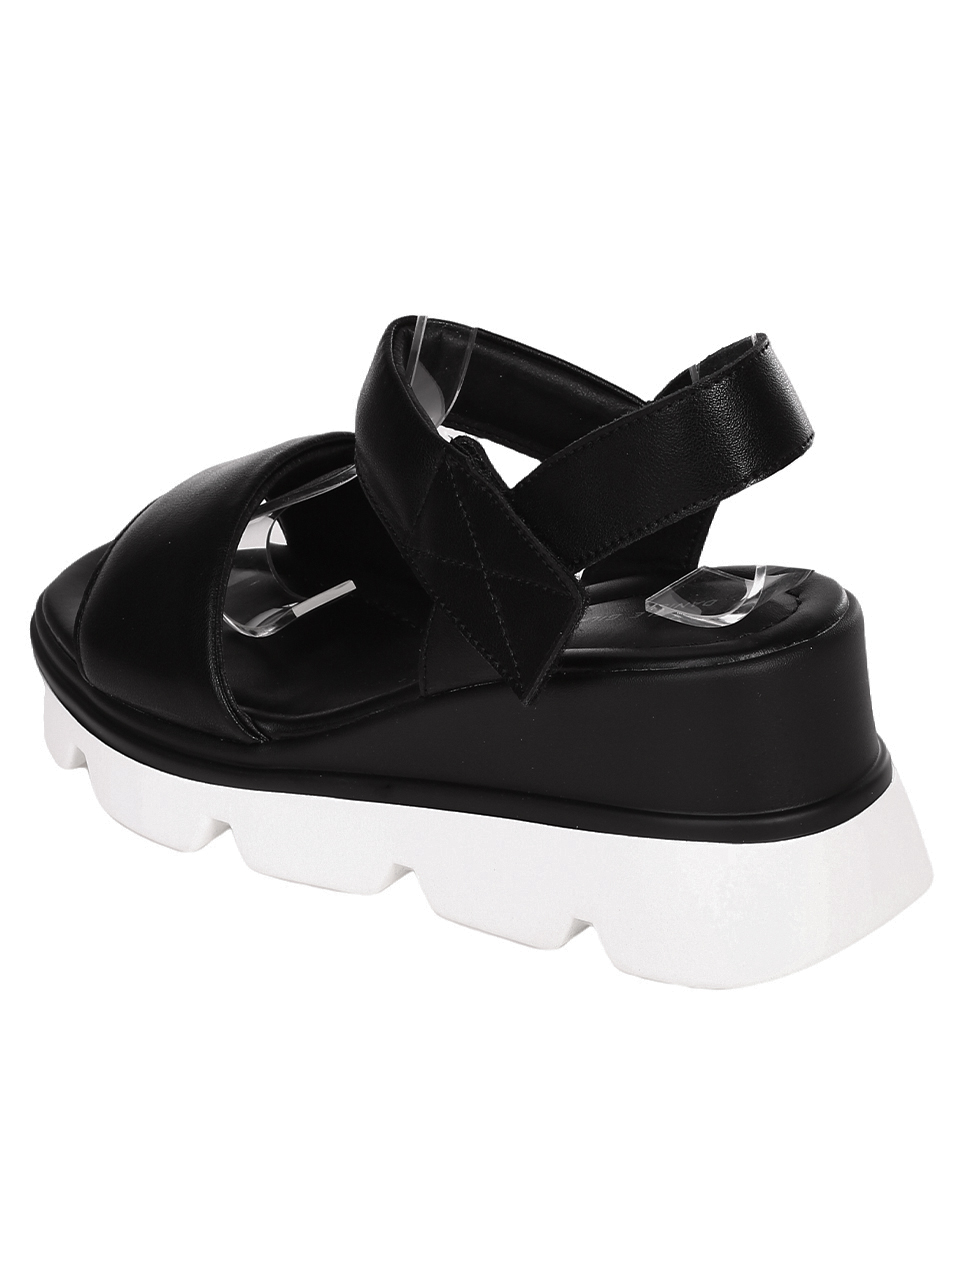 Ежедневни дамски сандали на платформа от естествена кожа 4AF-23199 black